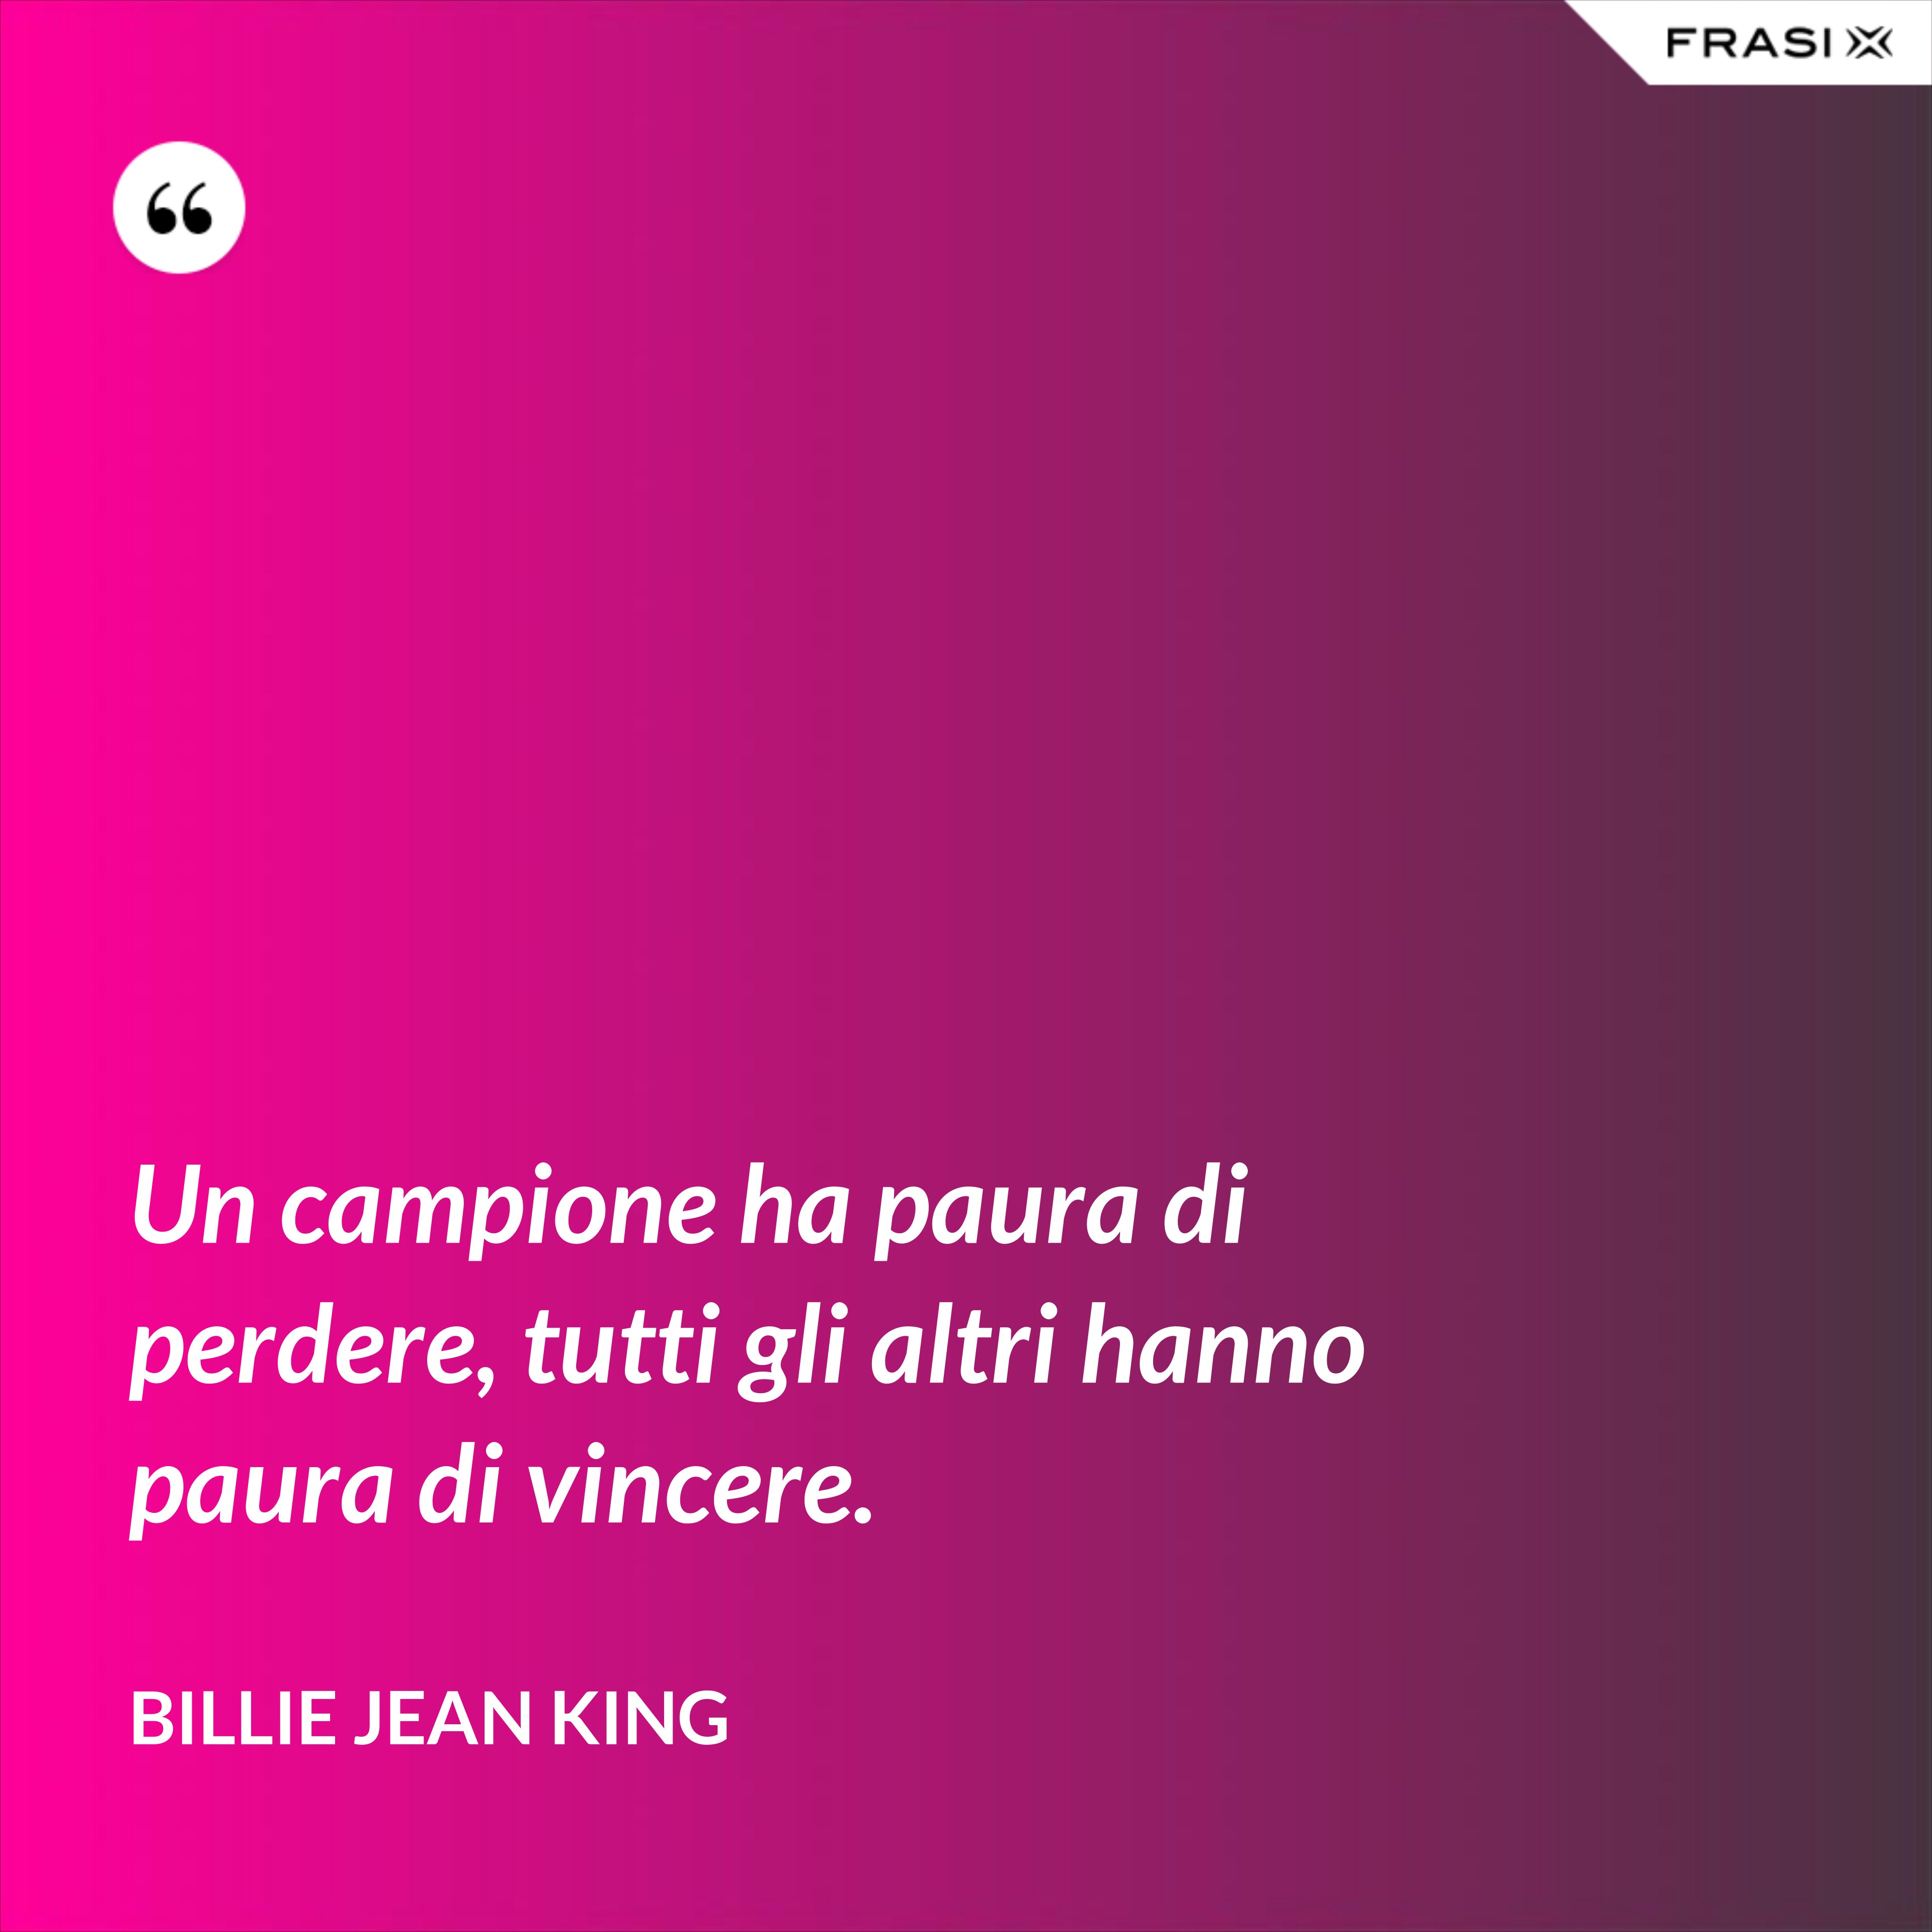 Un campione ha paura di perdere, tutti gli altri hanno paura di vincere. - Billie Jean King